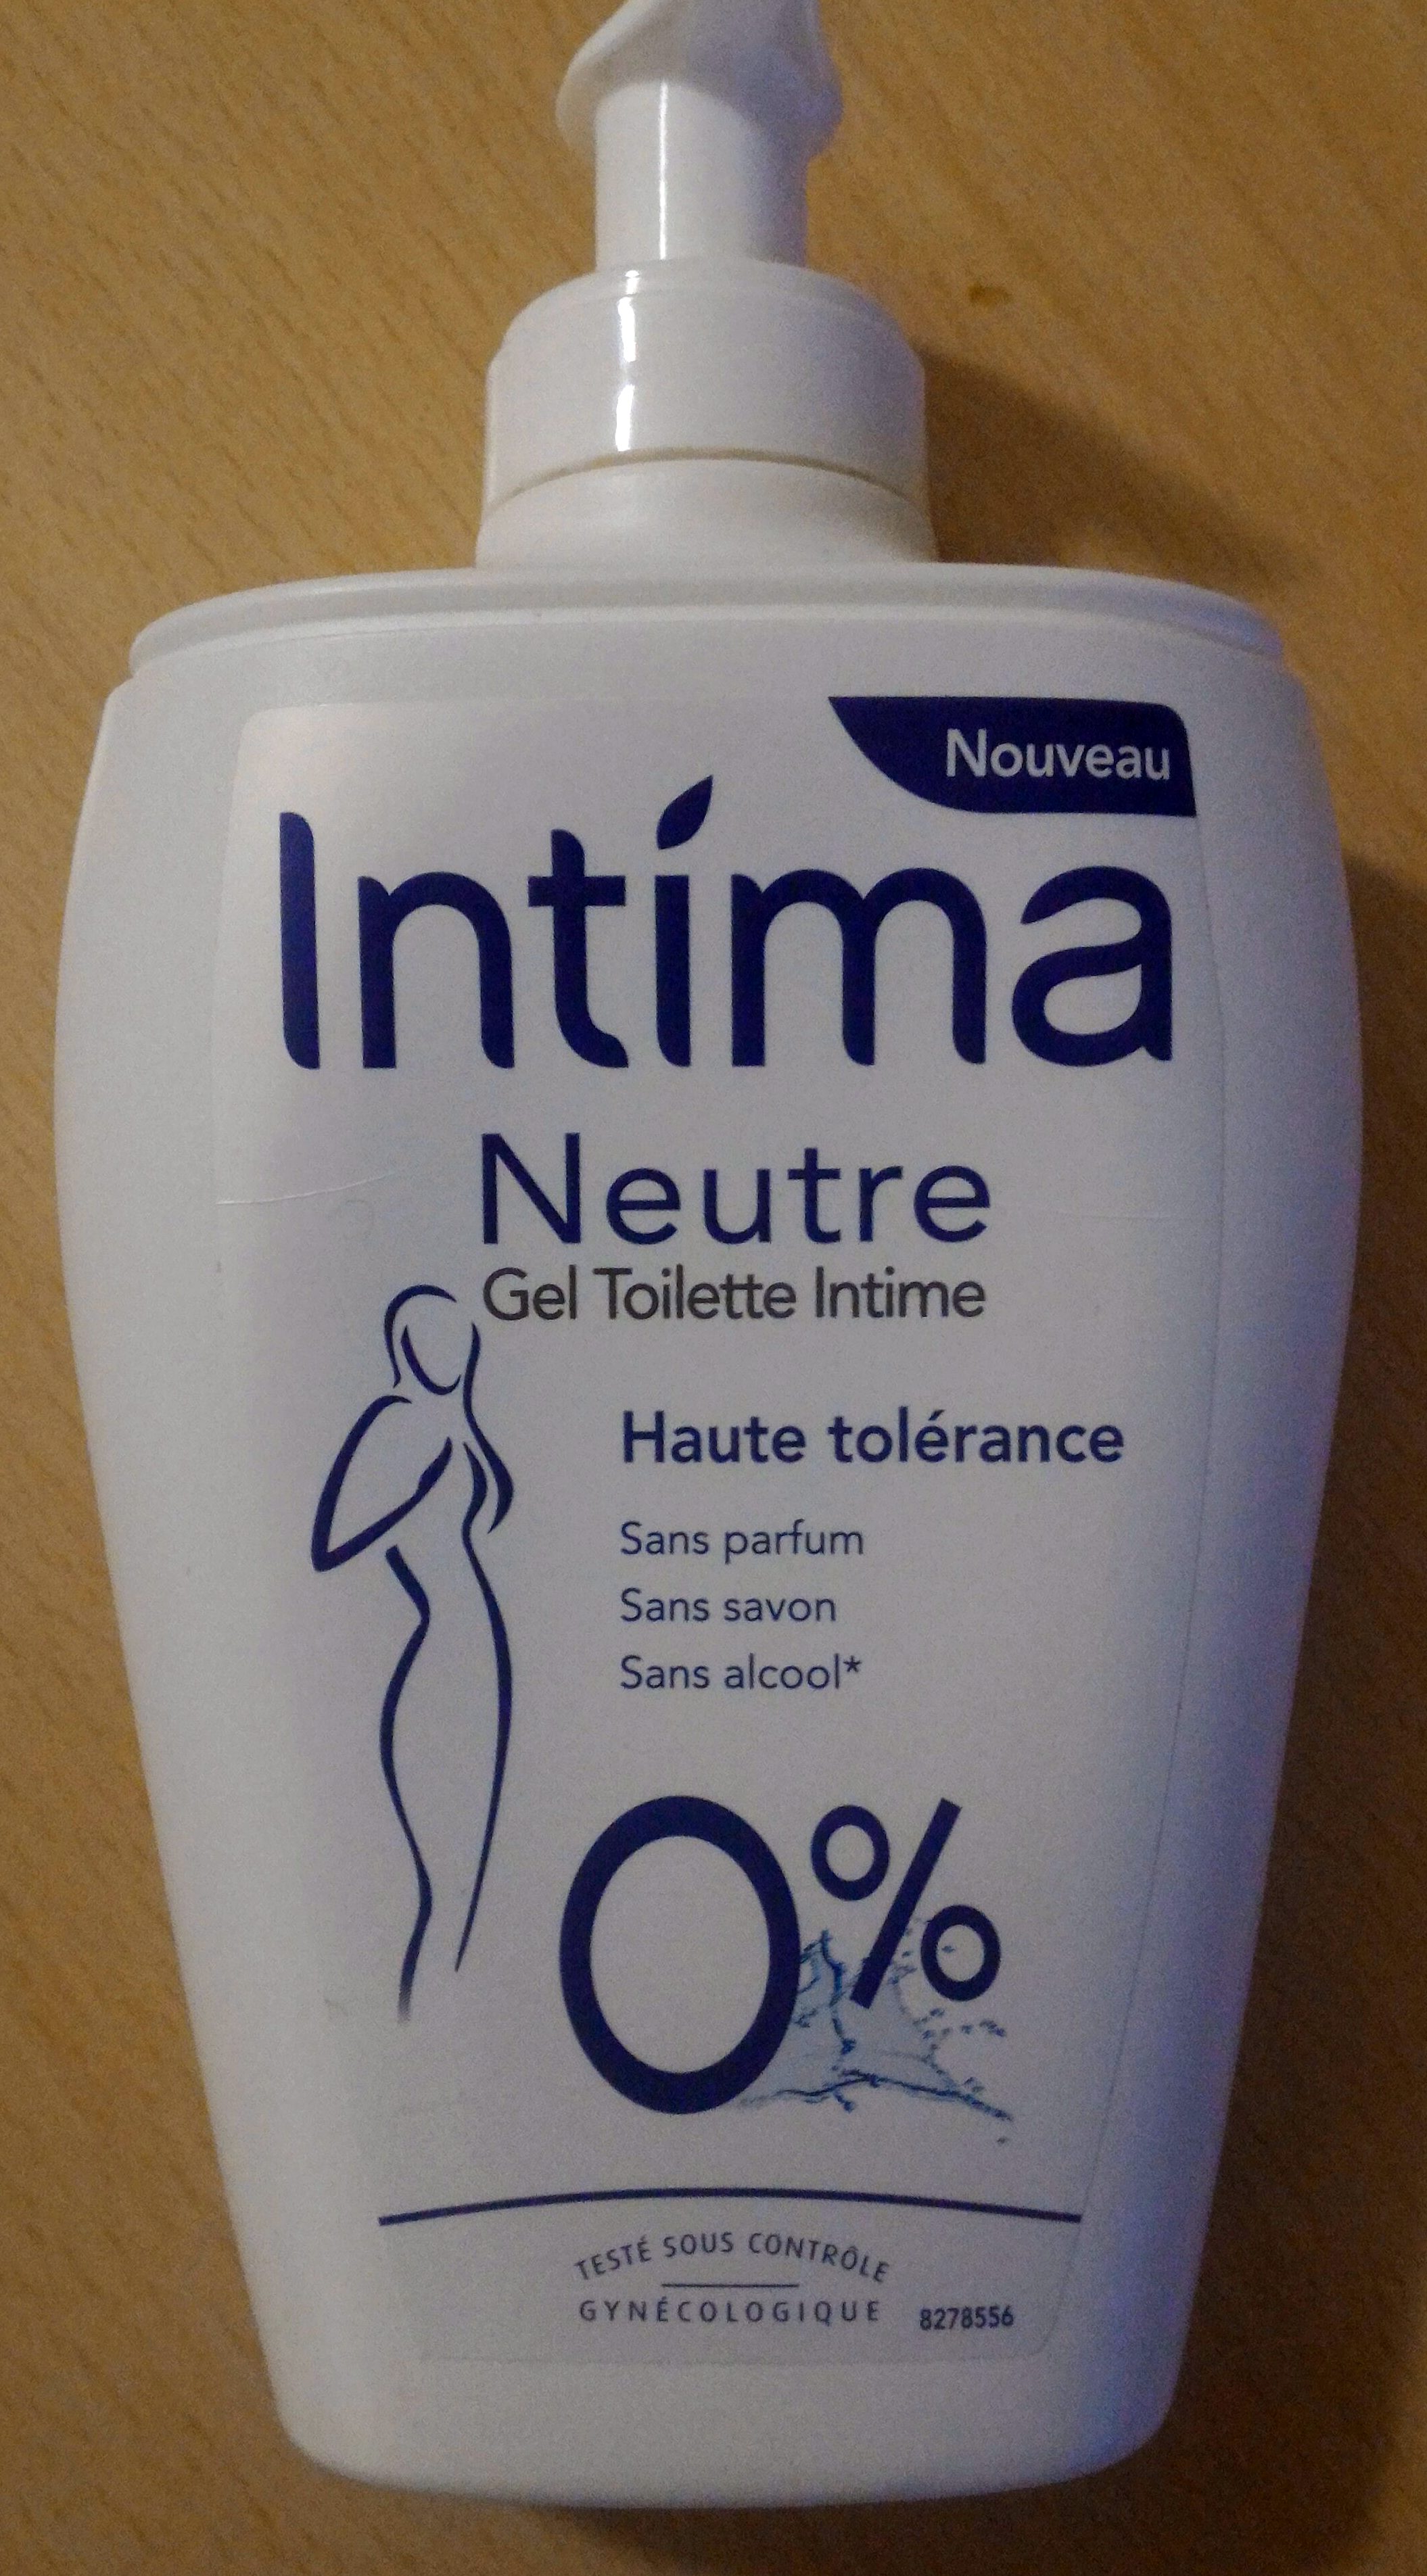 Neutre Gel Toilette Intime Haute tolérance 0% - Produto - fr